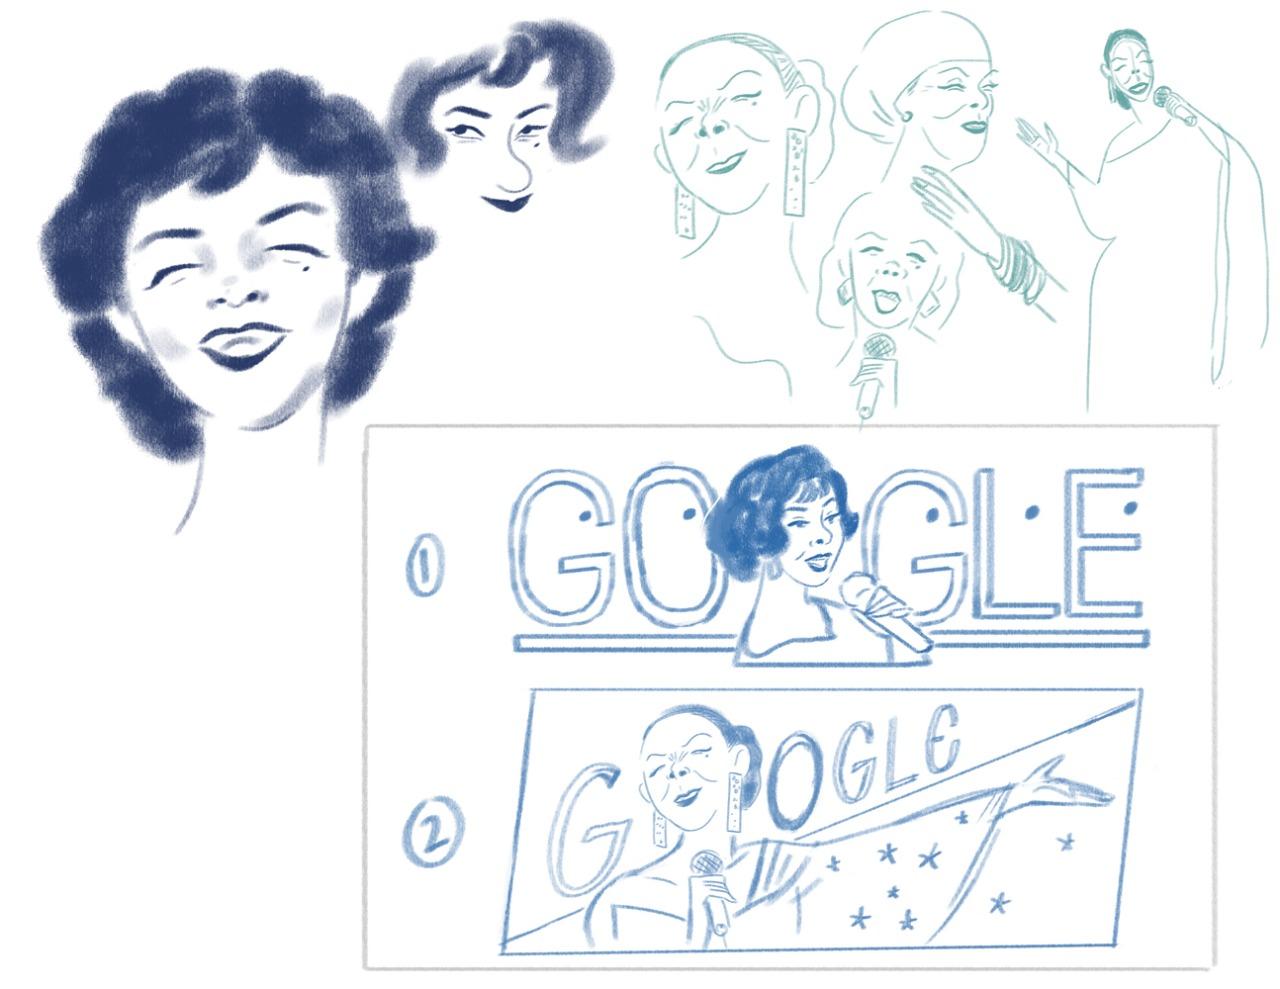 Rascunhos do Doodle do Google sobre Elizeth Cardoso